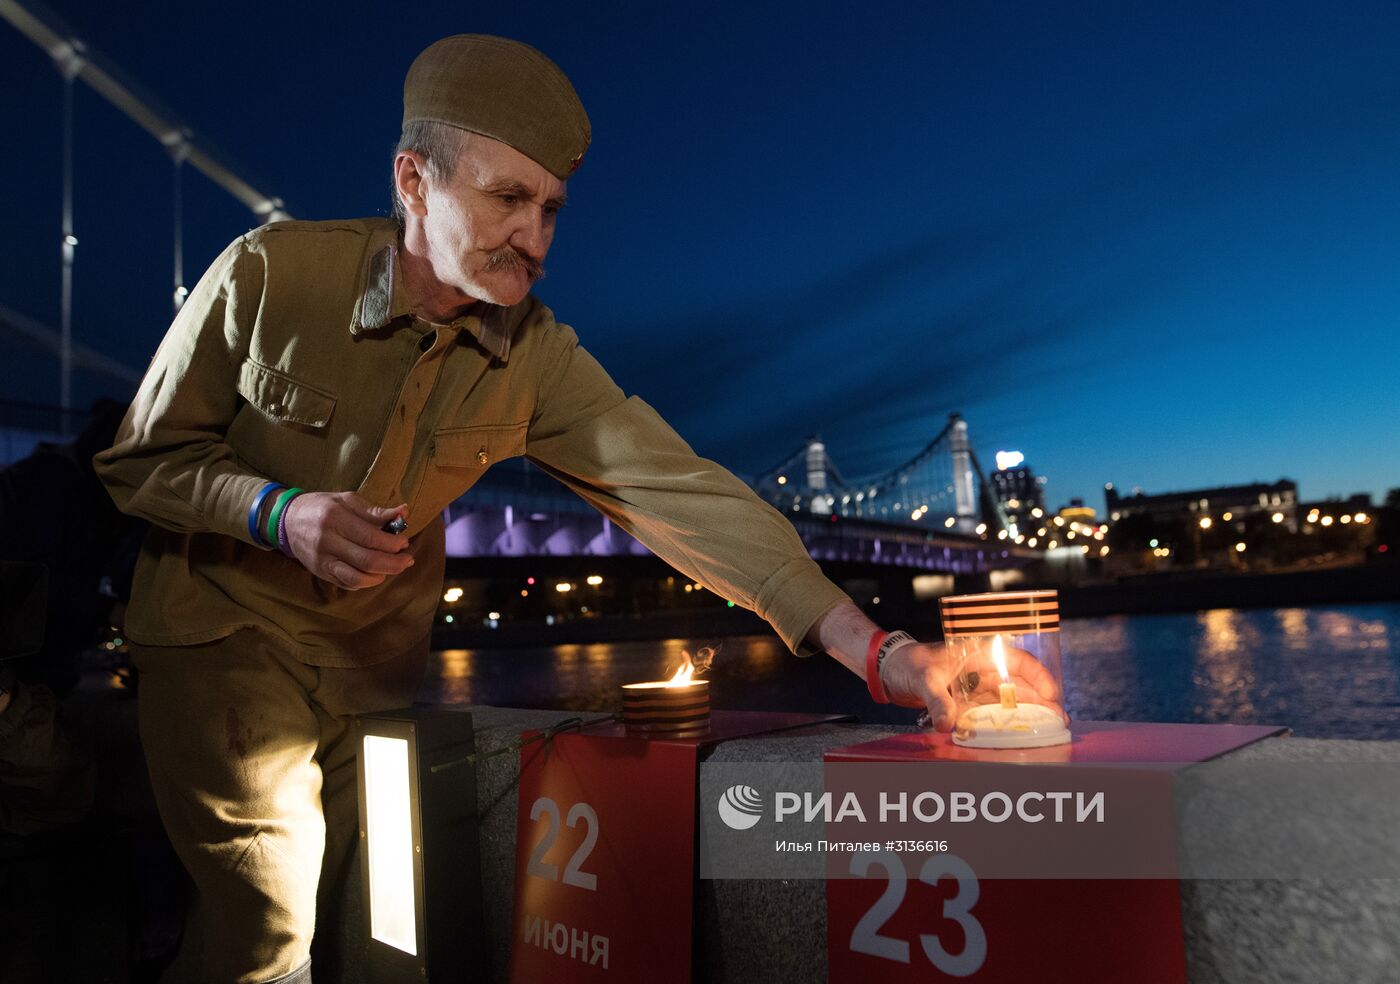 День памяти и скорби в Москве